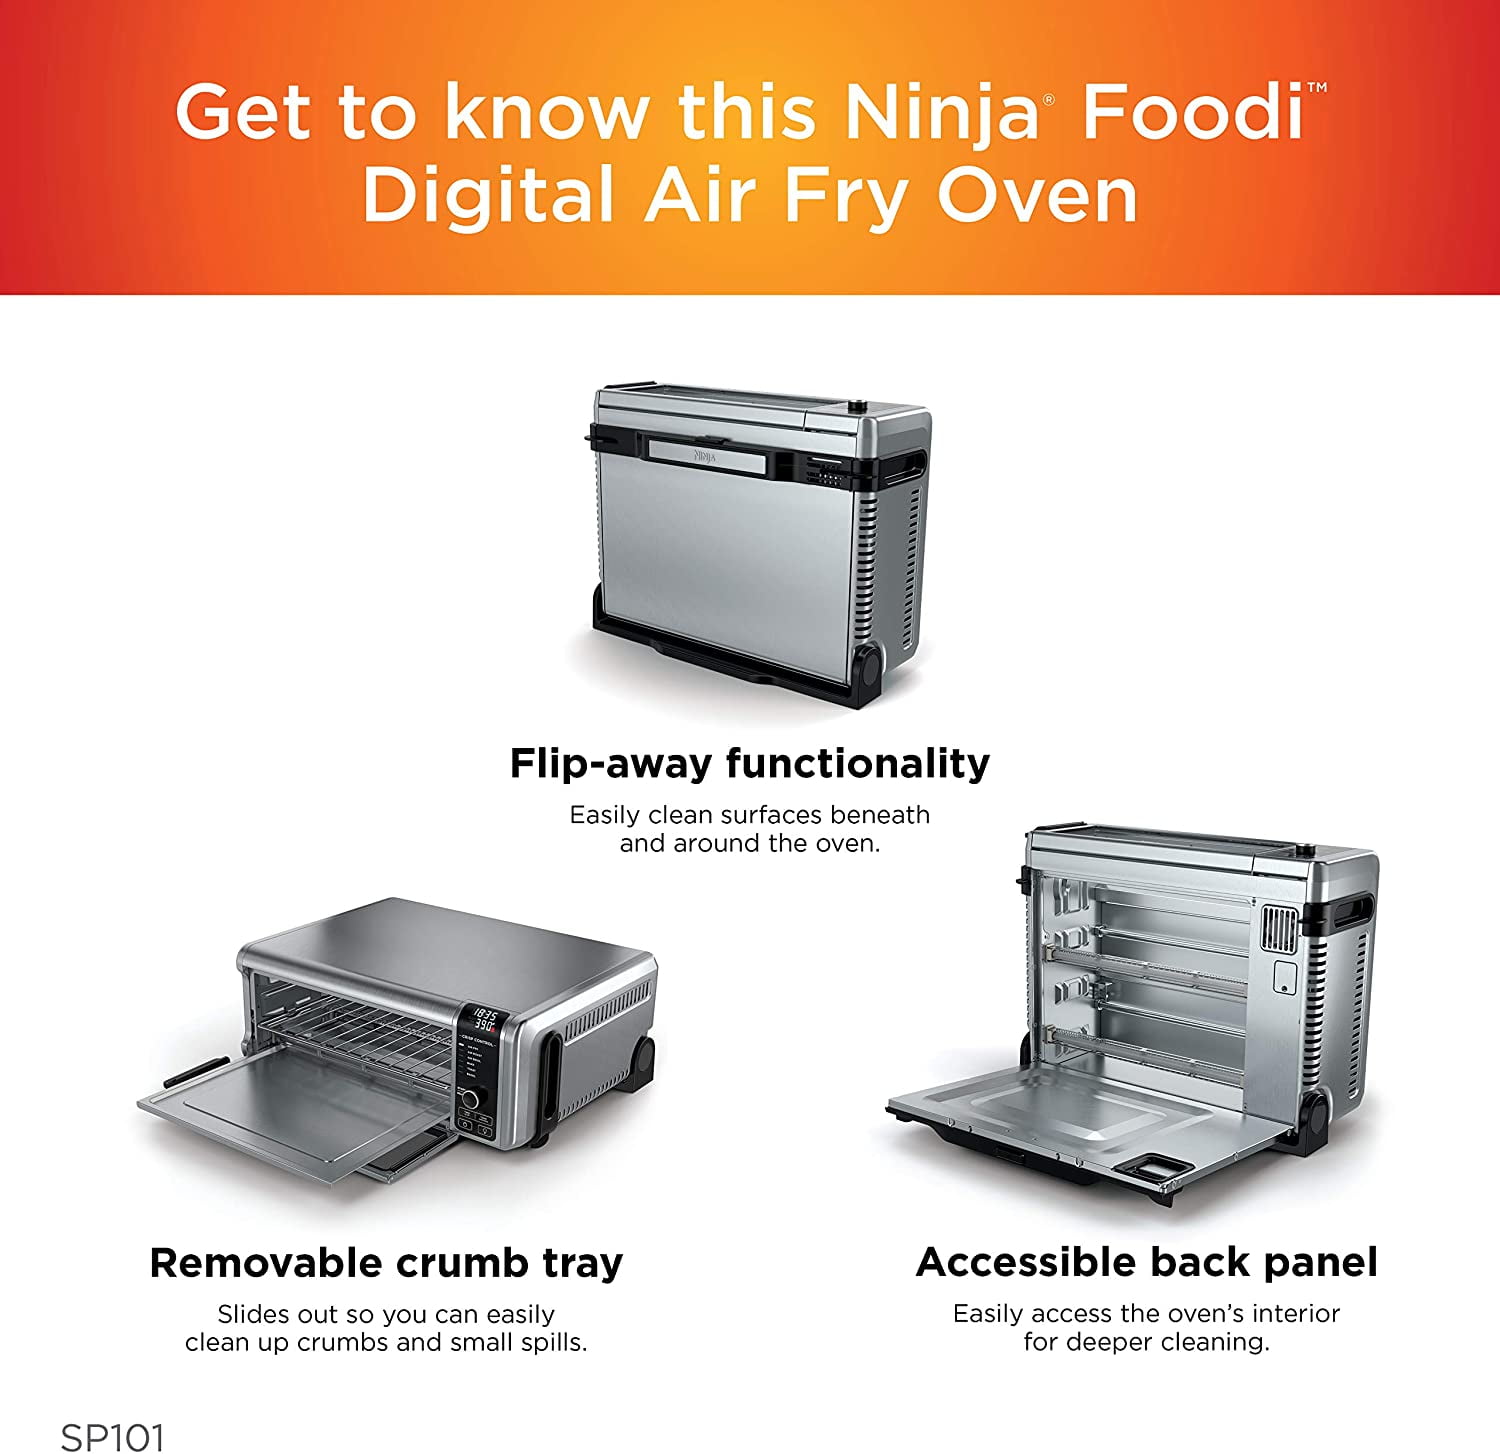 Get a refurbished Ninja Foodie SP101 digital air fry over for $89